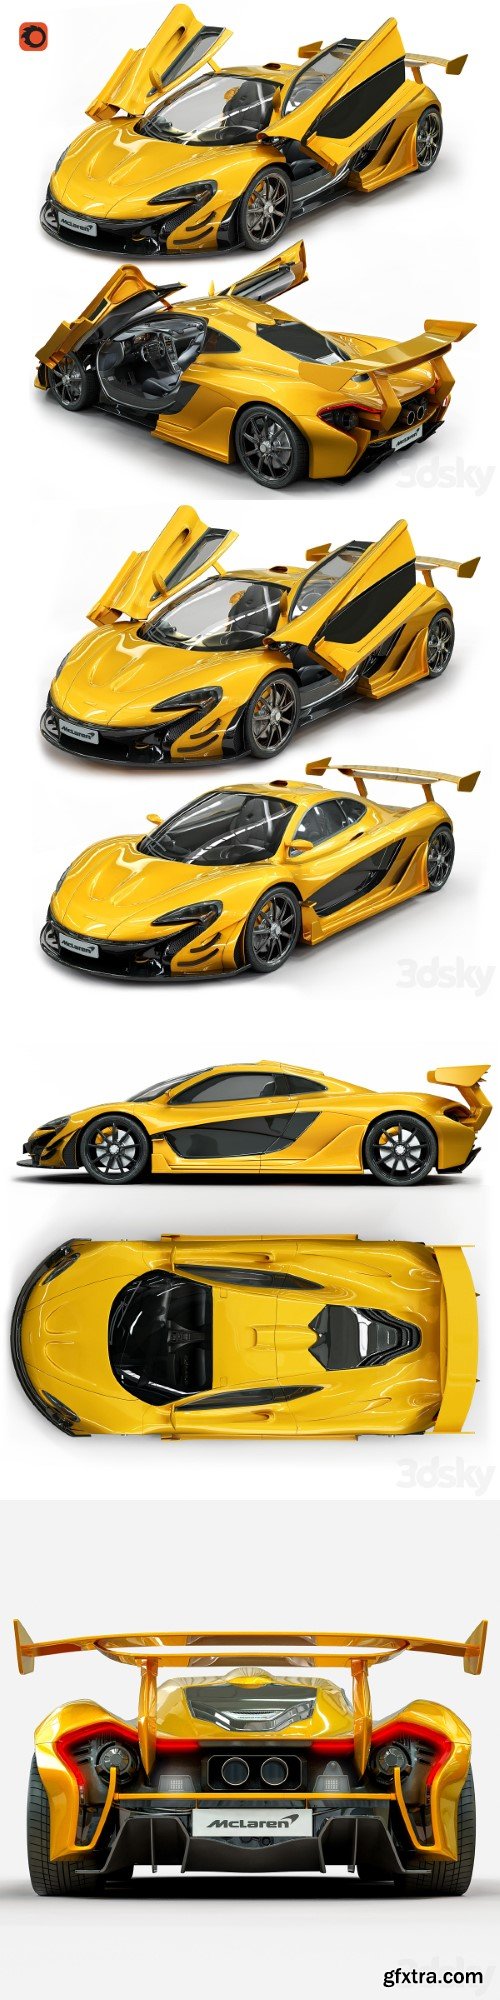 McLaren_P1 3D model